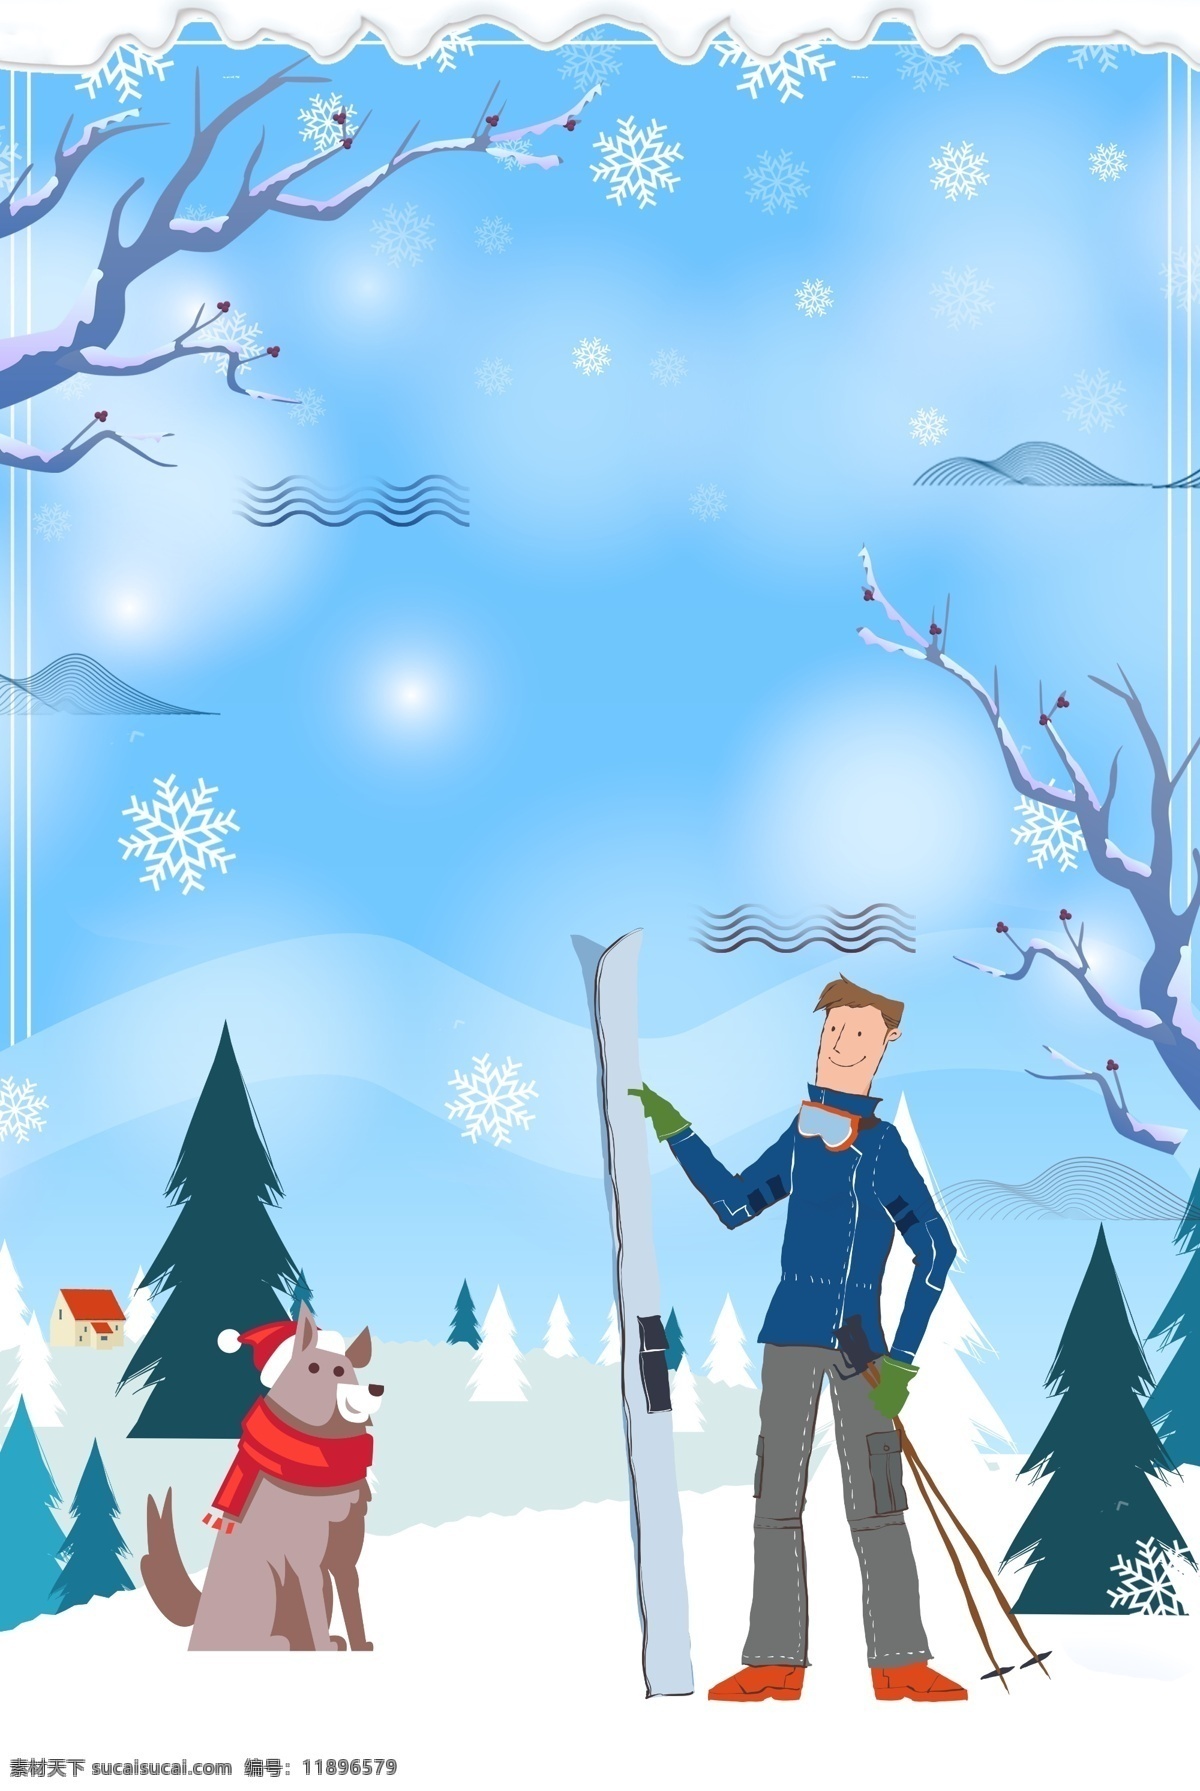 冬季 圣诞节 滑雪 背景 卡通人物 圣诞树 雪花 冬天 活动背景 圣诞蛋 狗狗 冬季滑雪 滑雪海报 冰雪背景 背景设计 滑雪活动背景 滑雪展板 滑雪素材